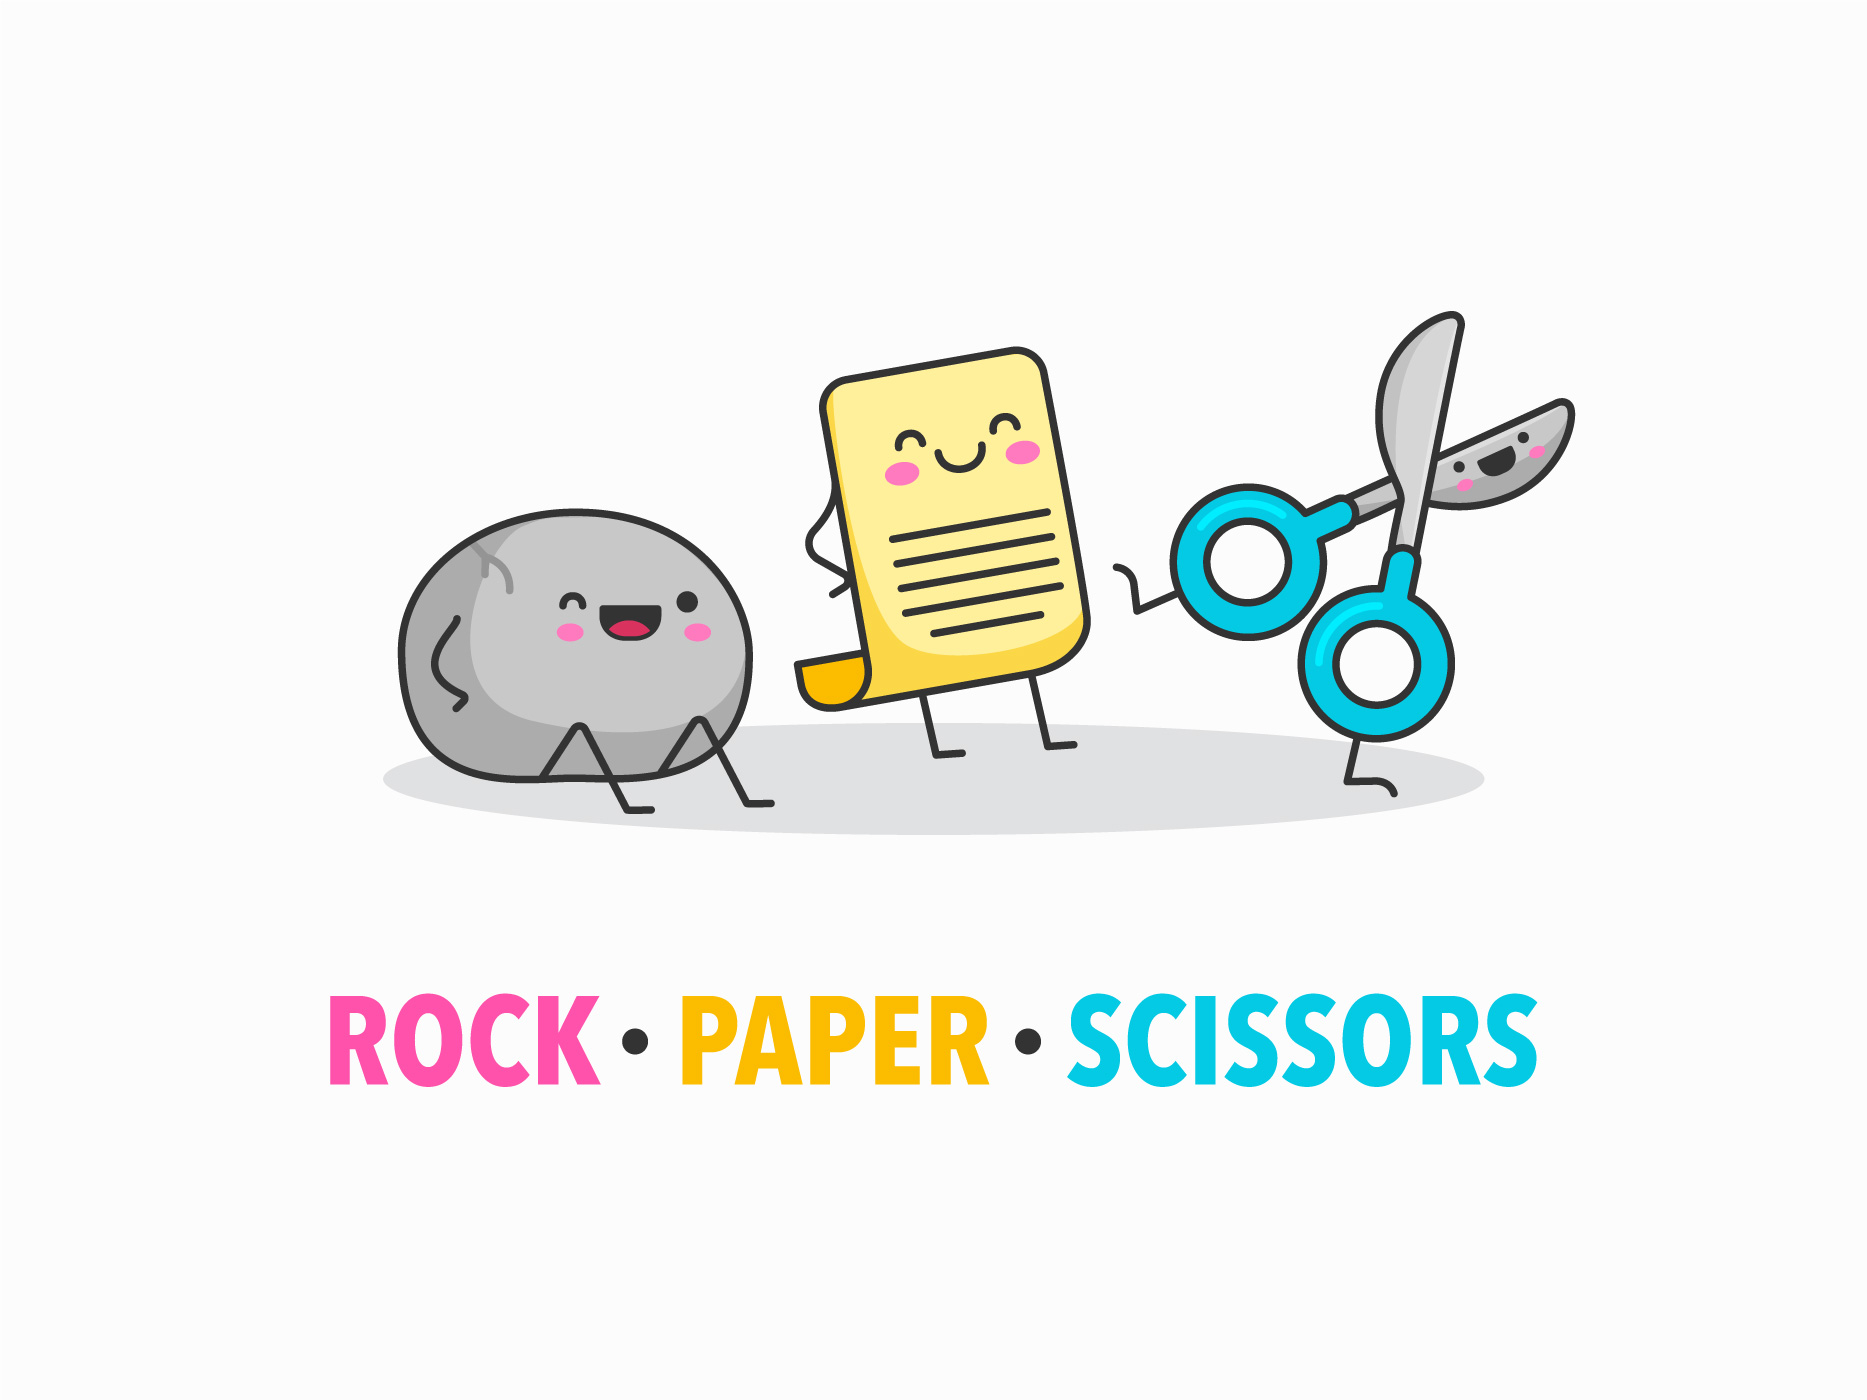 Rock paper scissors pr